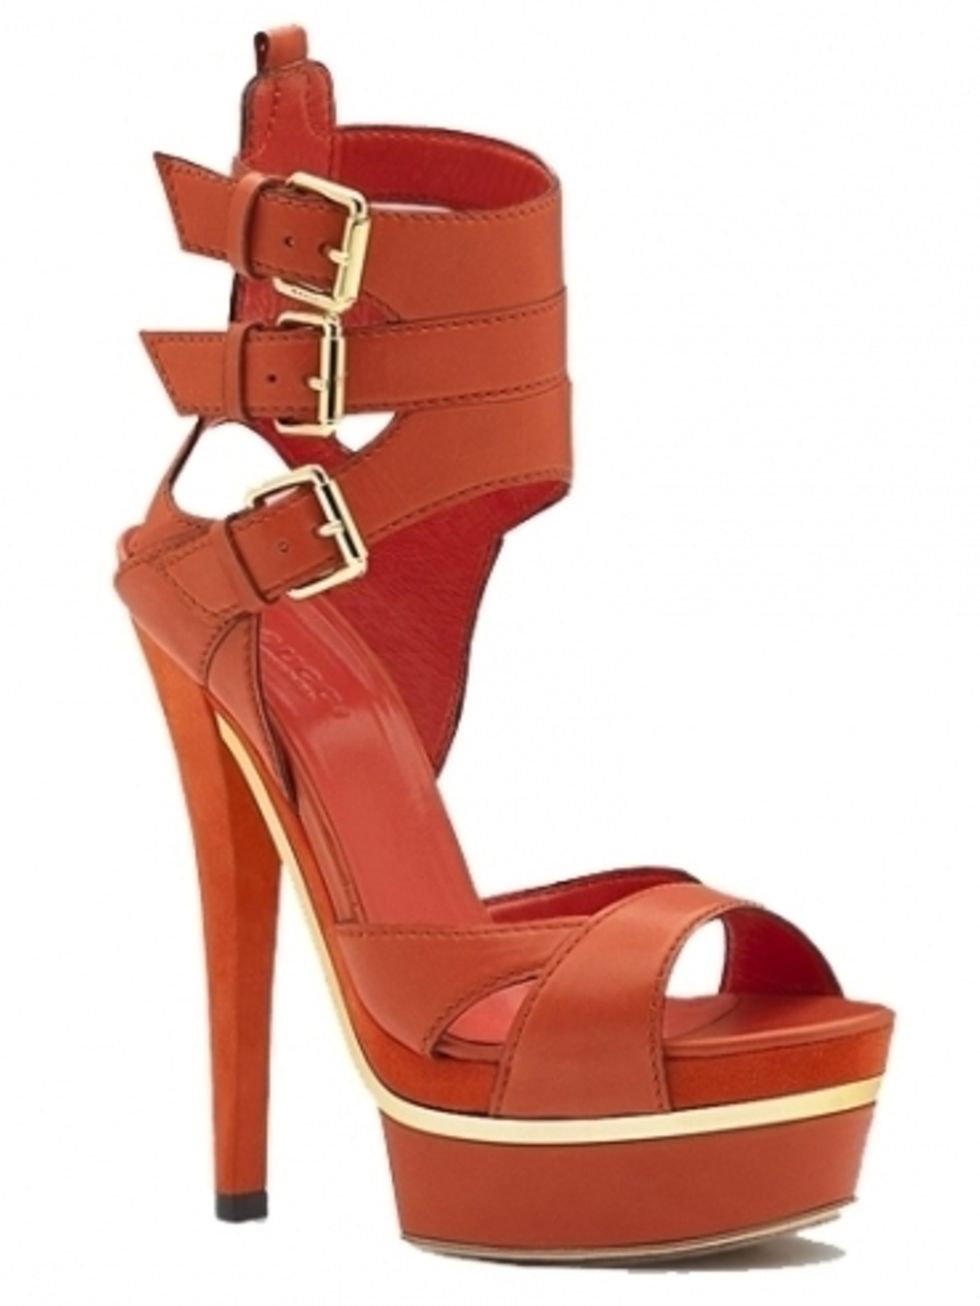 Footwear, High heels, Brown, Red, Sandal, Tan, Carmine, Maroon, Fashion accessory, Fashion, 